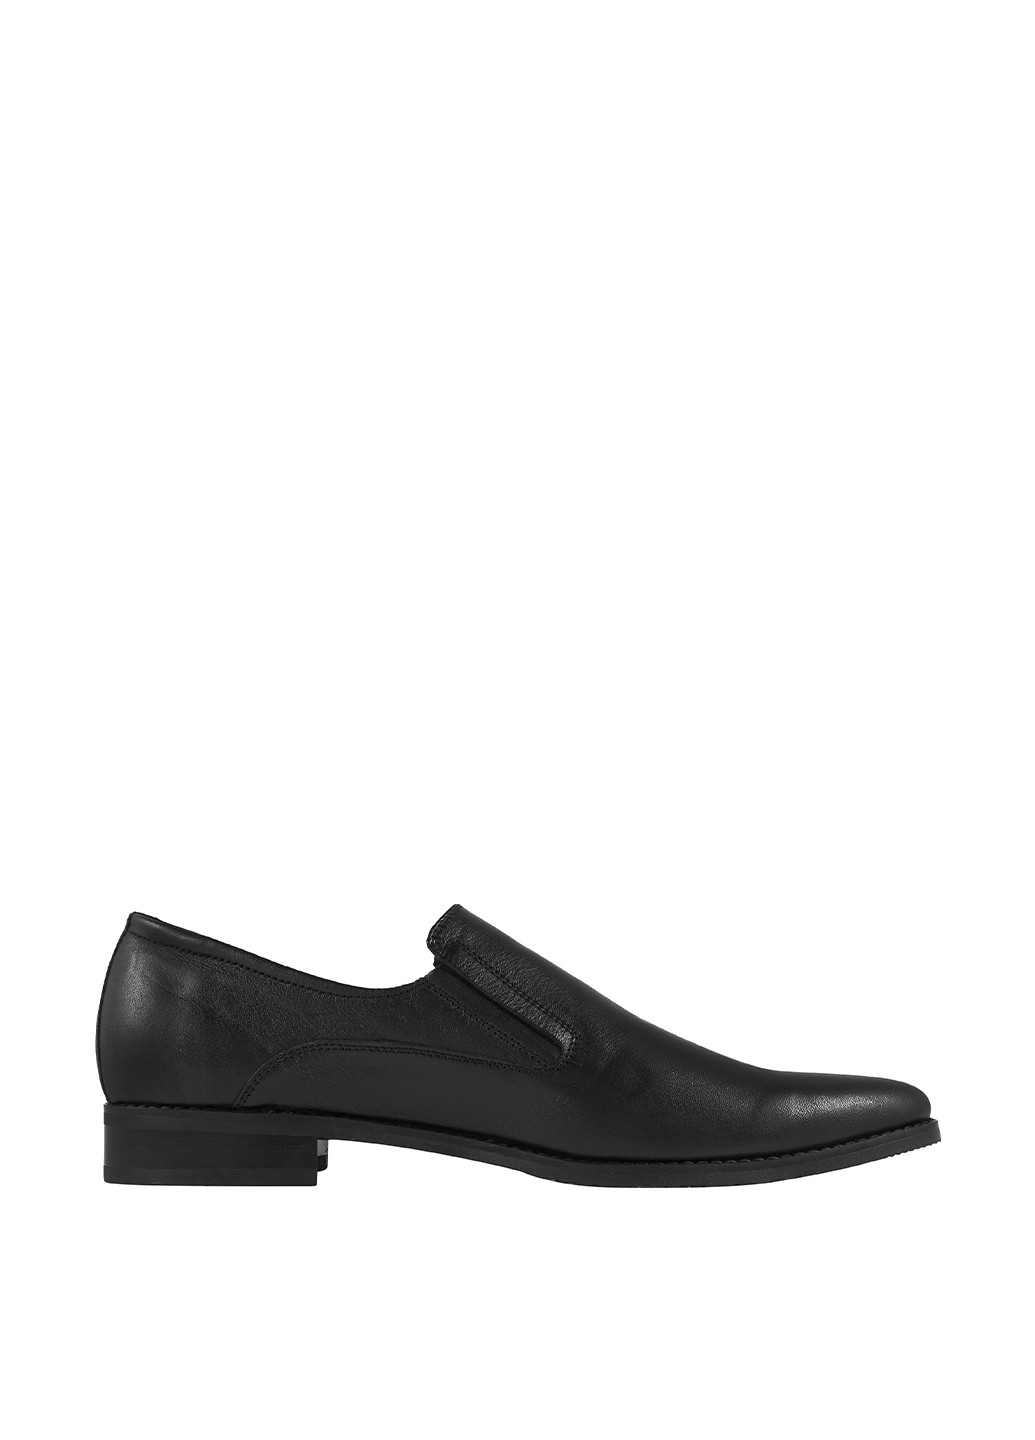 Черные классические туфли Berg без шнурков